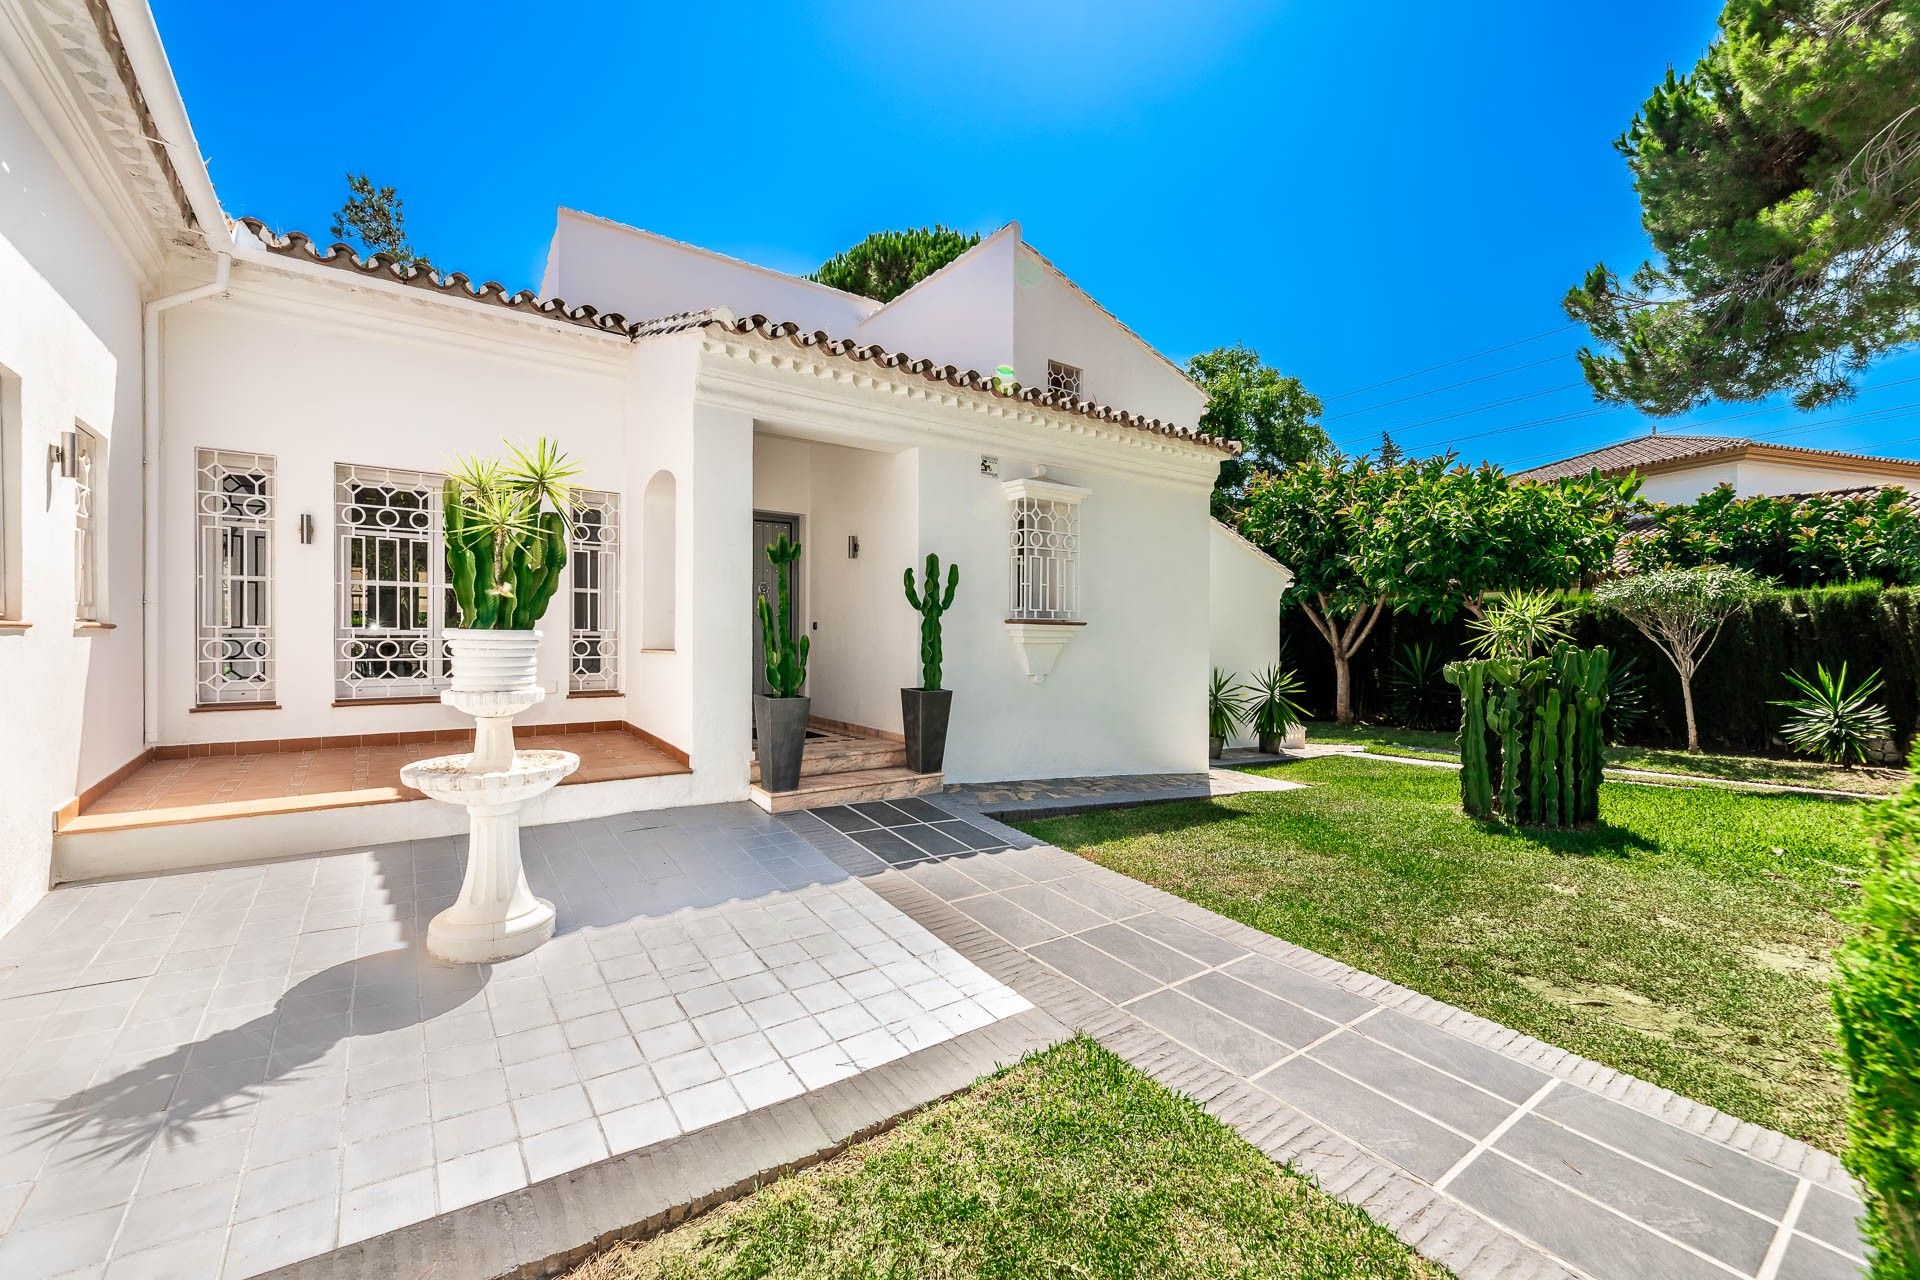 Mediterranean-style villa in golf valley close to all amenities | Engel & Völkers Marbella